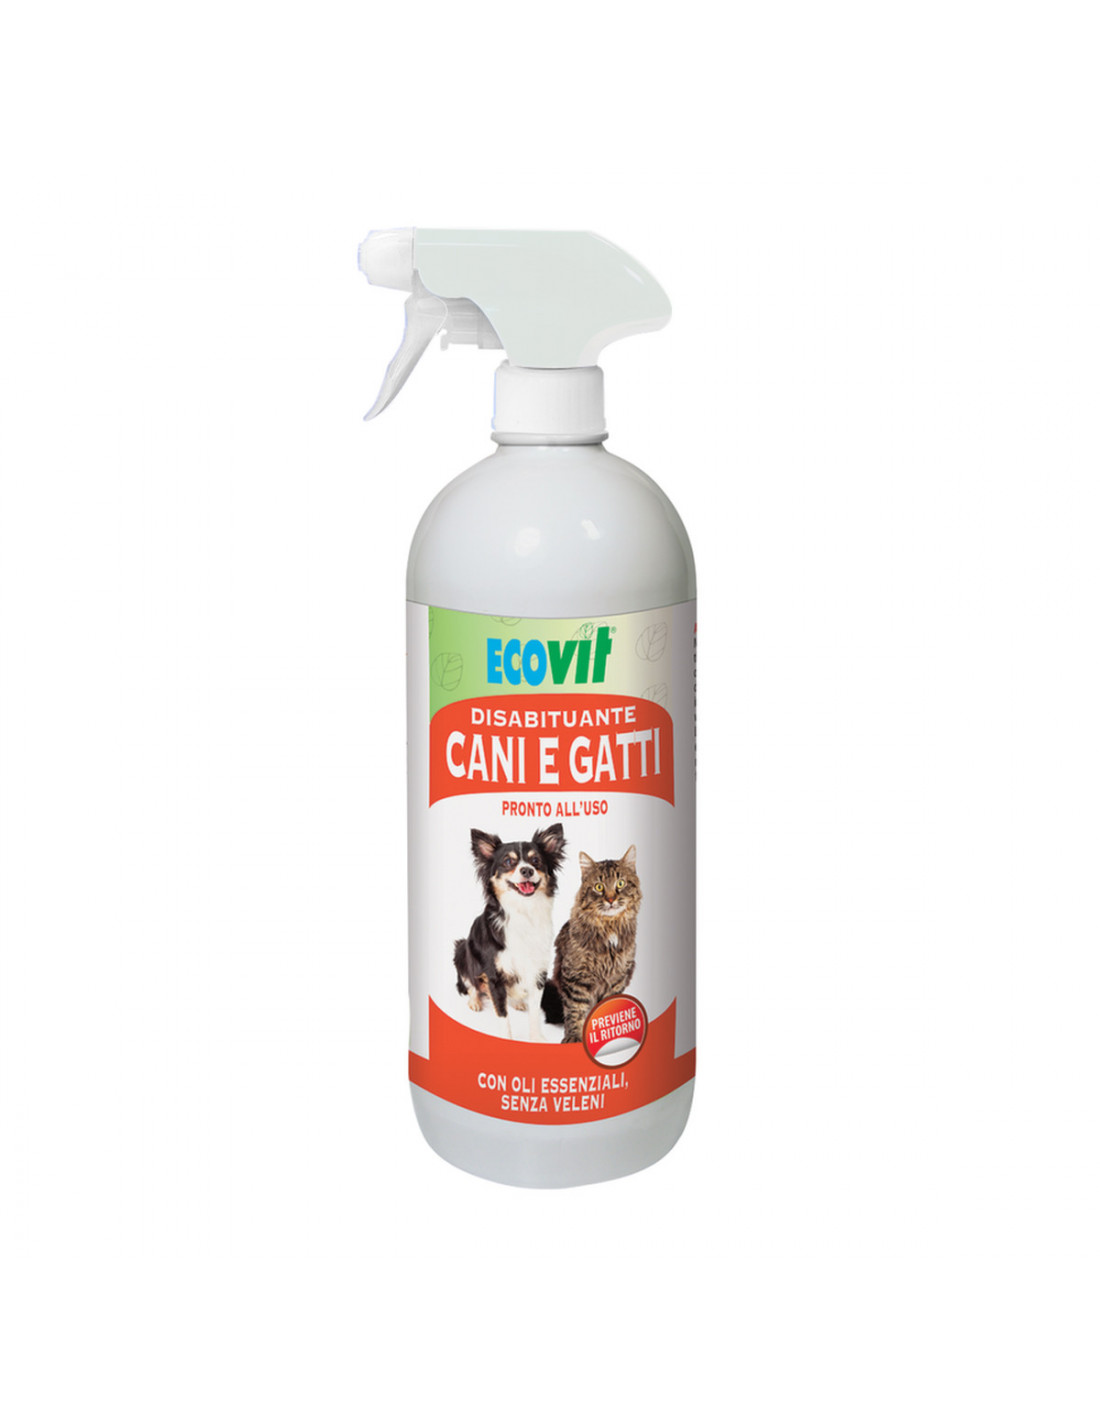 Disabituante cani e gatti liquido Ecovit con oli essenziali senza veleni